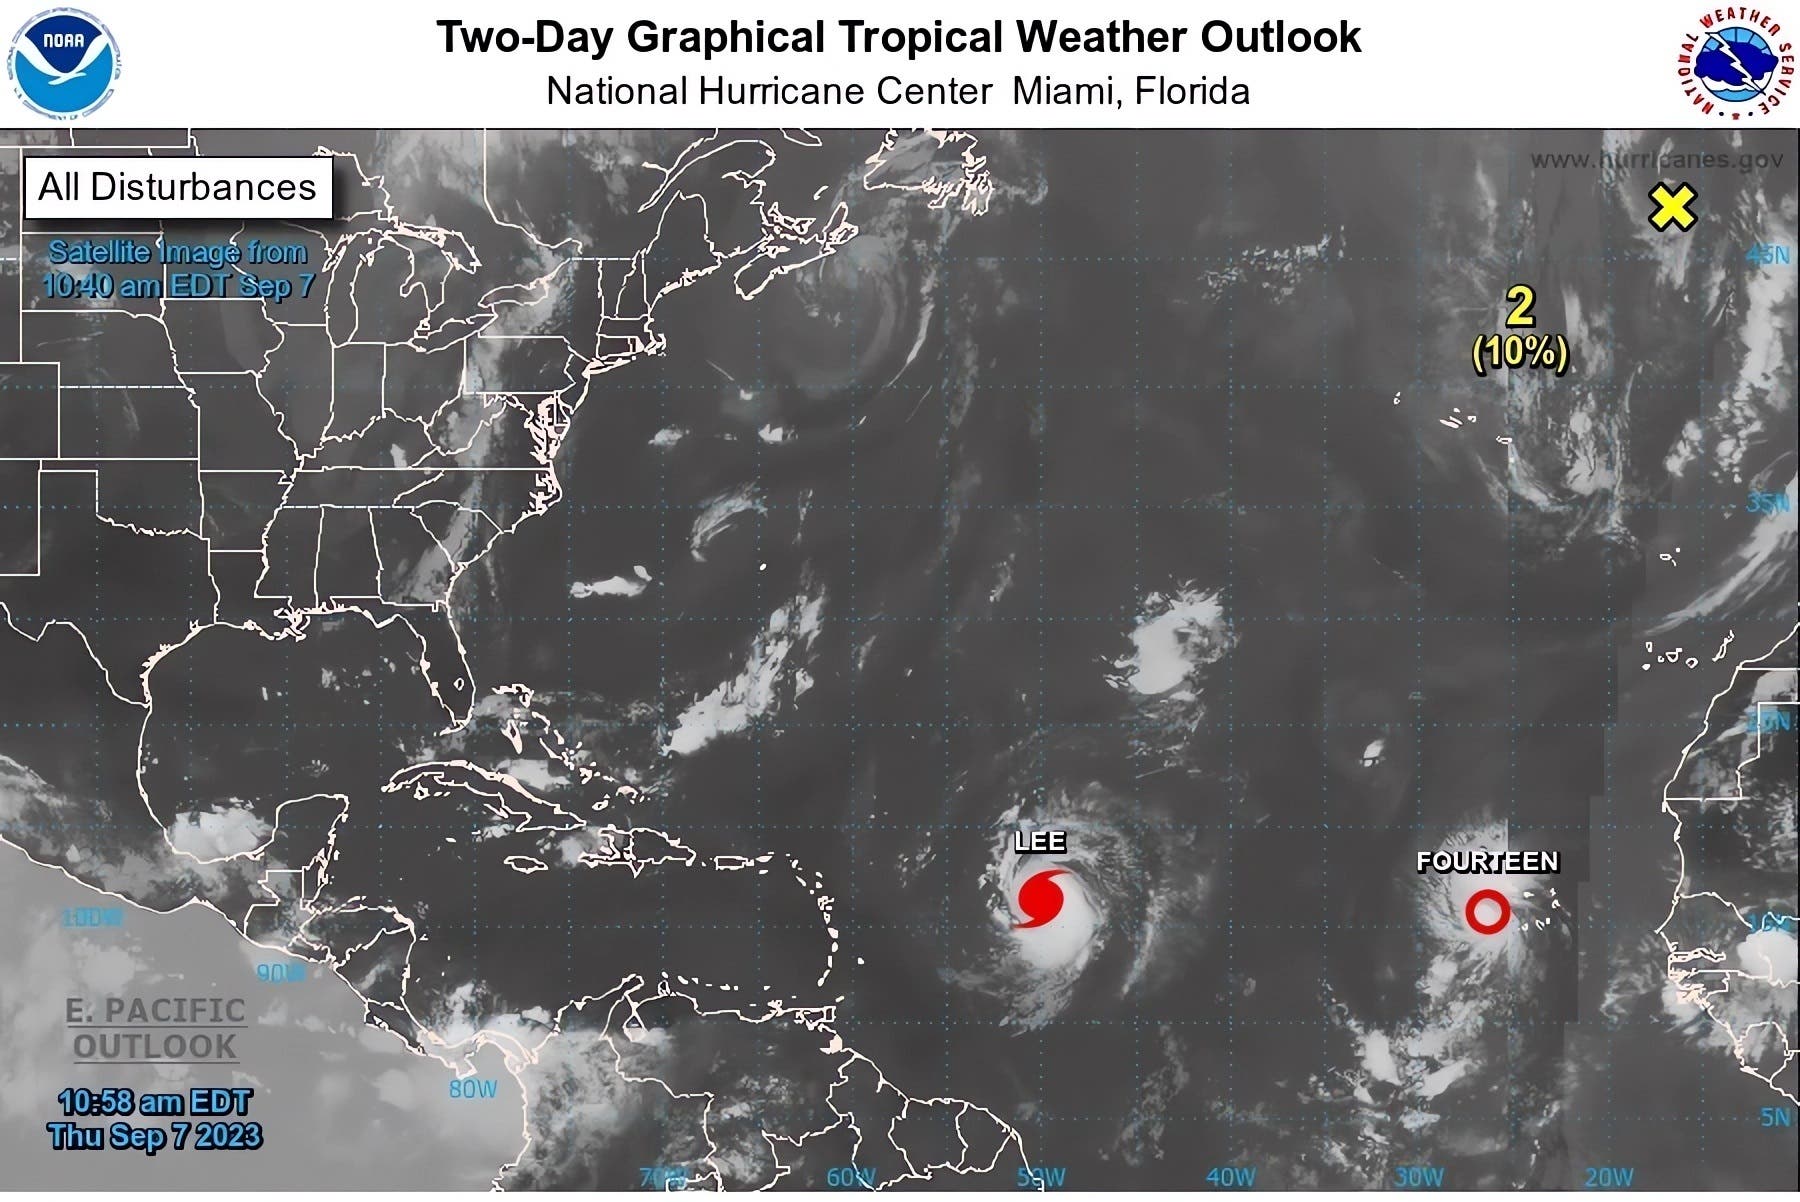 Lee es ya un poderoso huracán de categoría 4 y se forma la tormenta tropical Margot